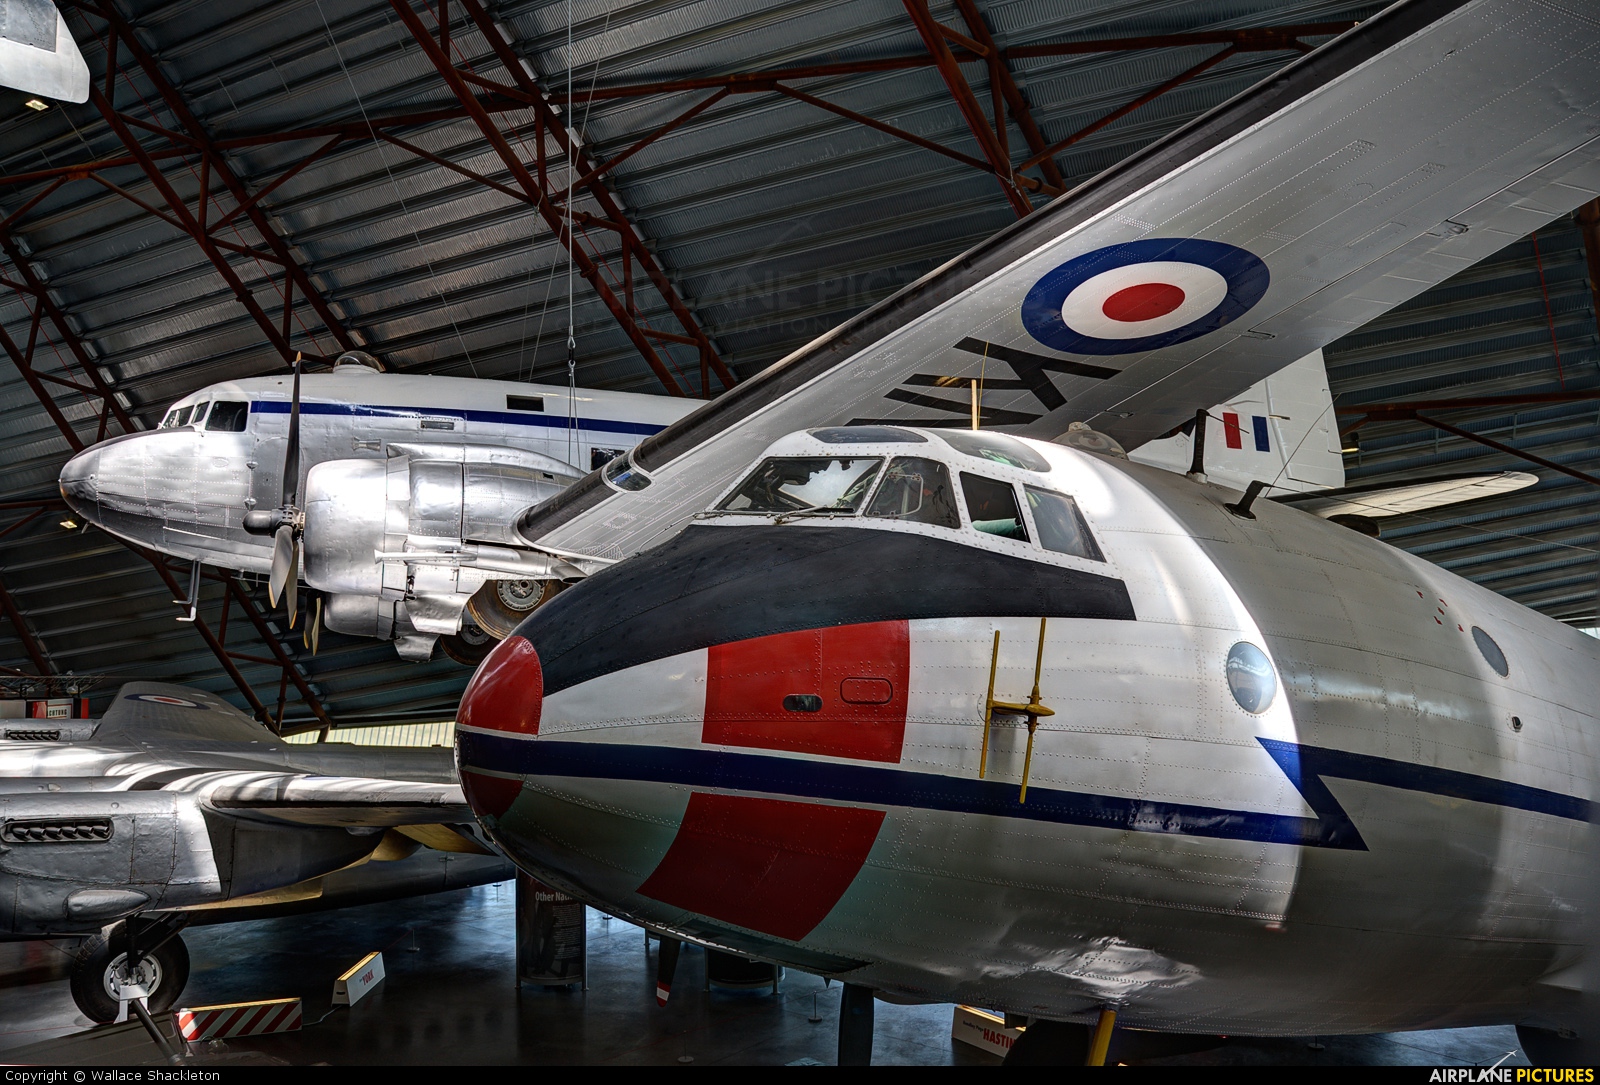 Royal Air Force TG511 aircraft at Cosford